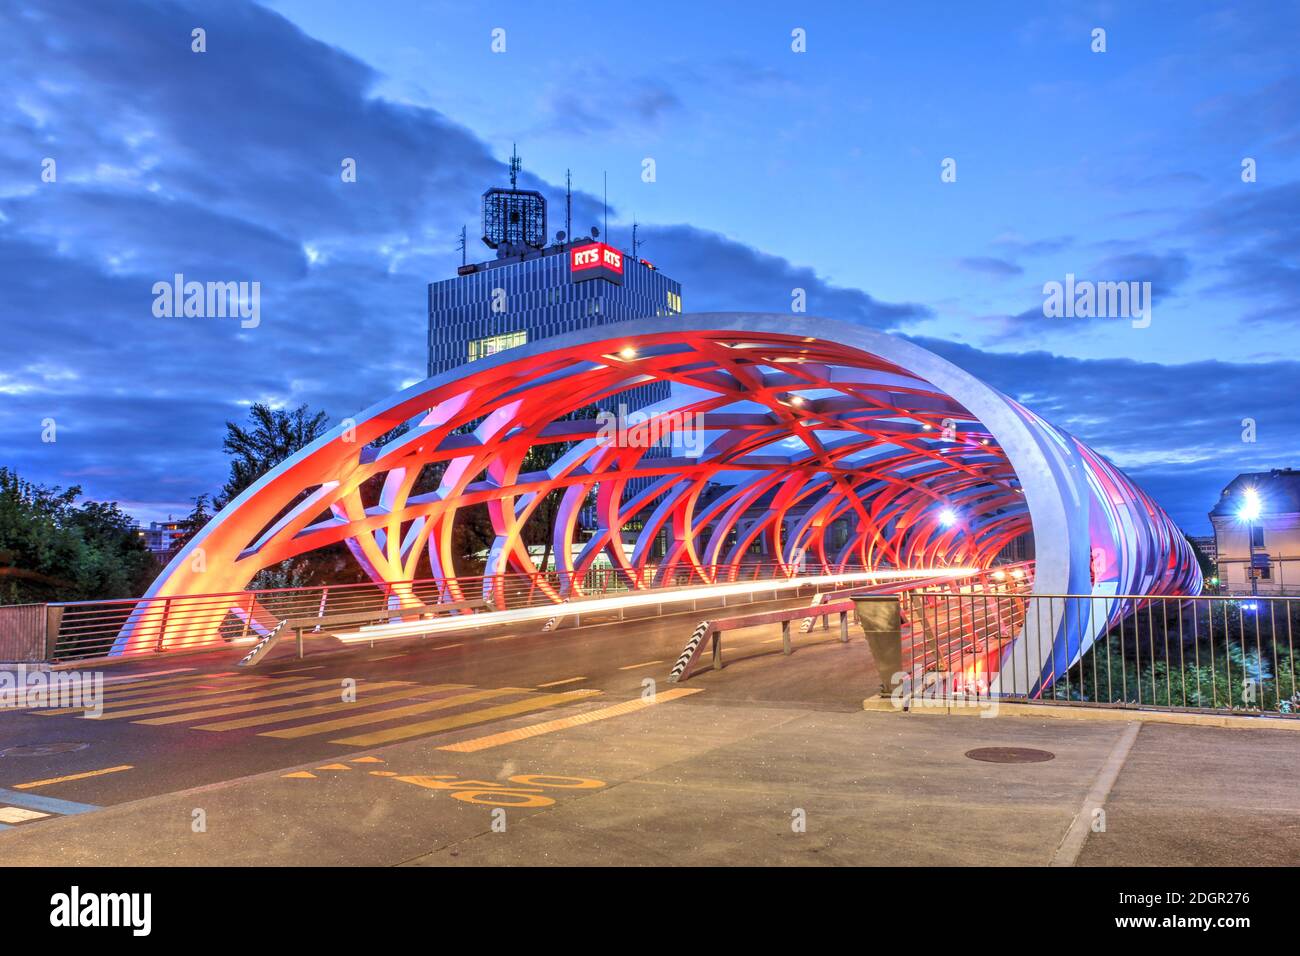 Genf, Schweiz - 17. Juli 2020 - Nachtszene mit der Hans-Wilsdorf-Brücke über die Arve, die das Plainpalais und Les Acacias distric verbindet Stockfoto